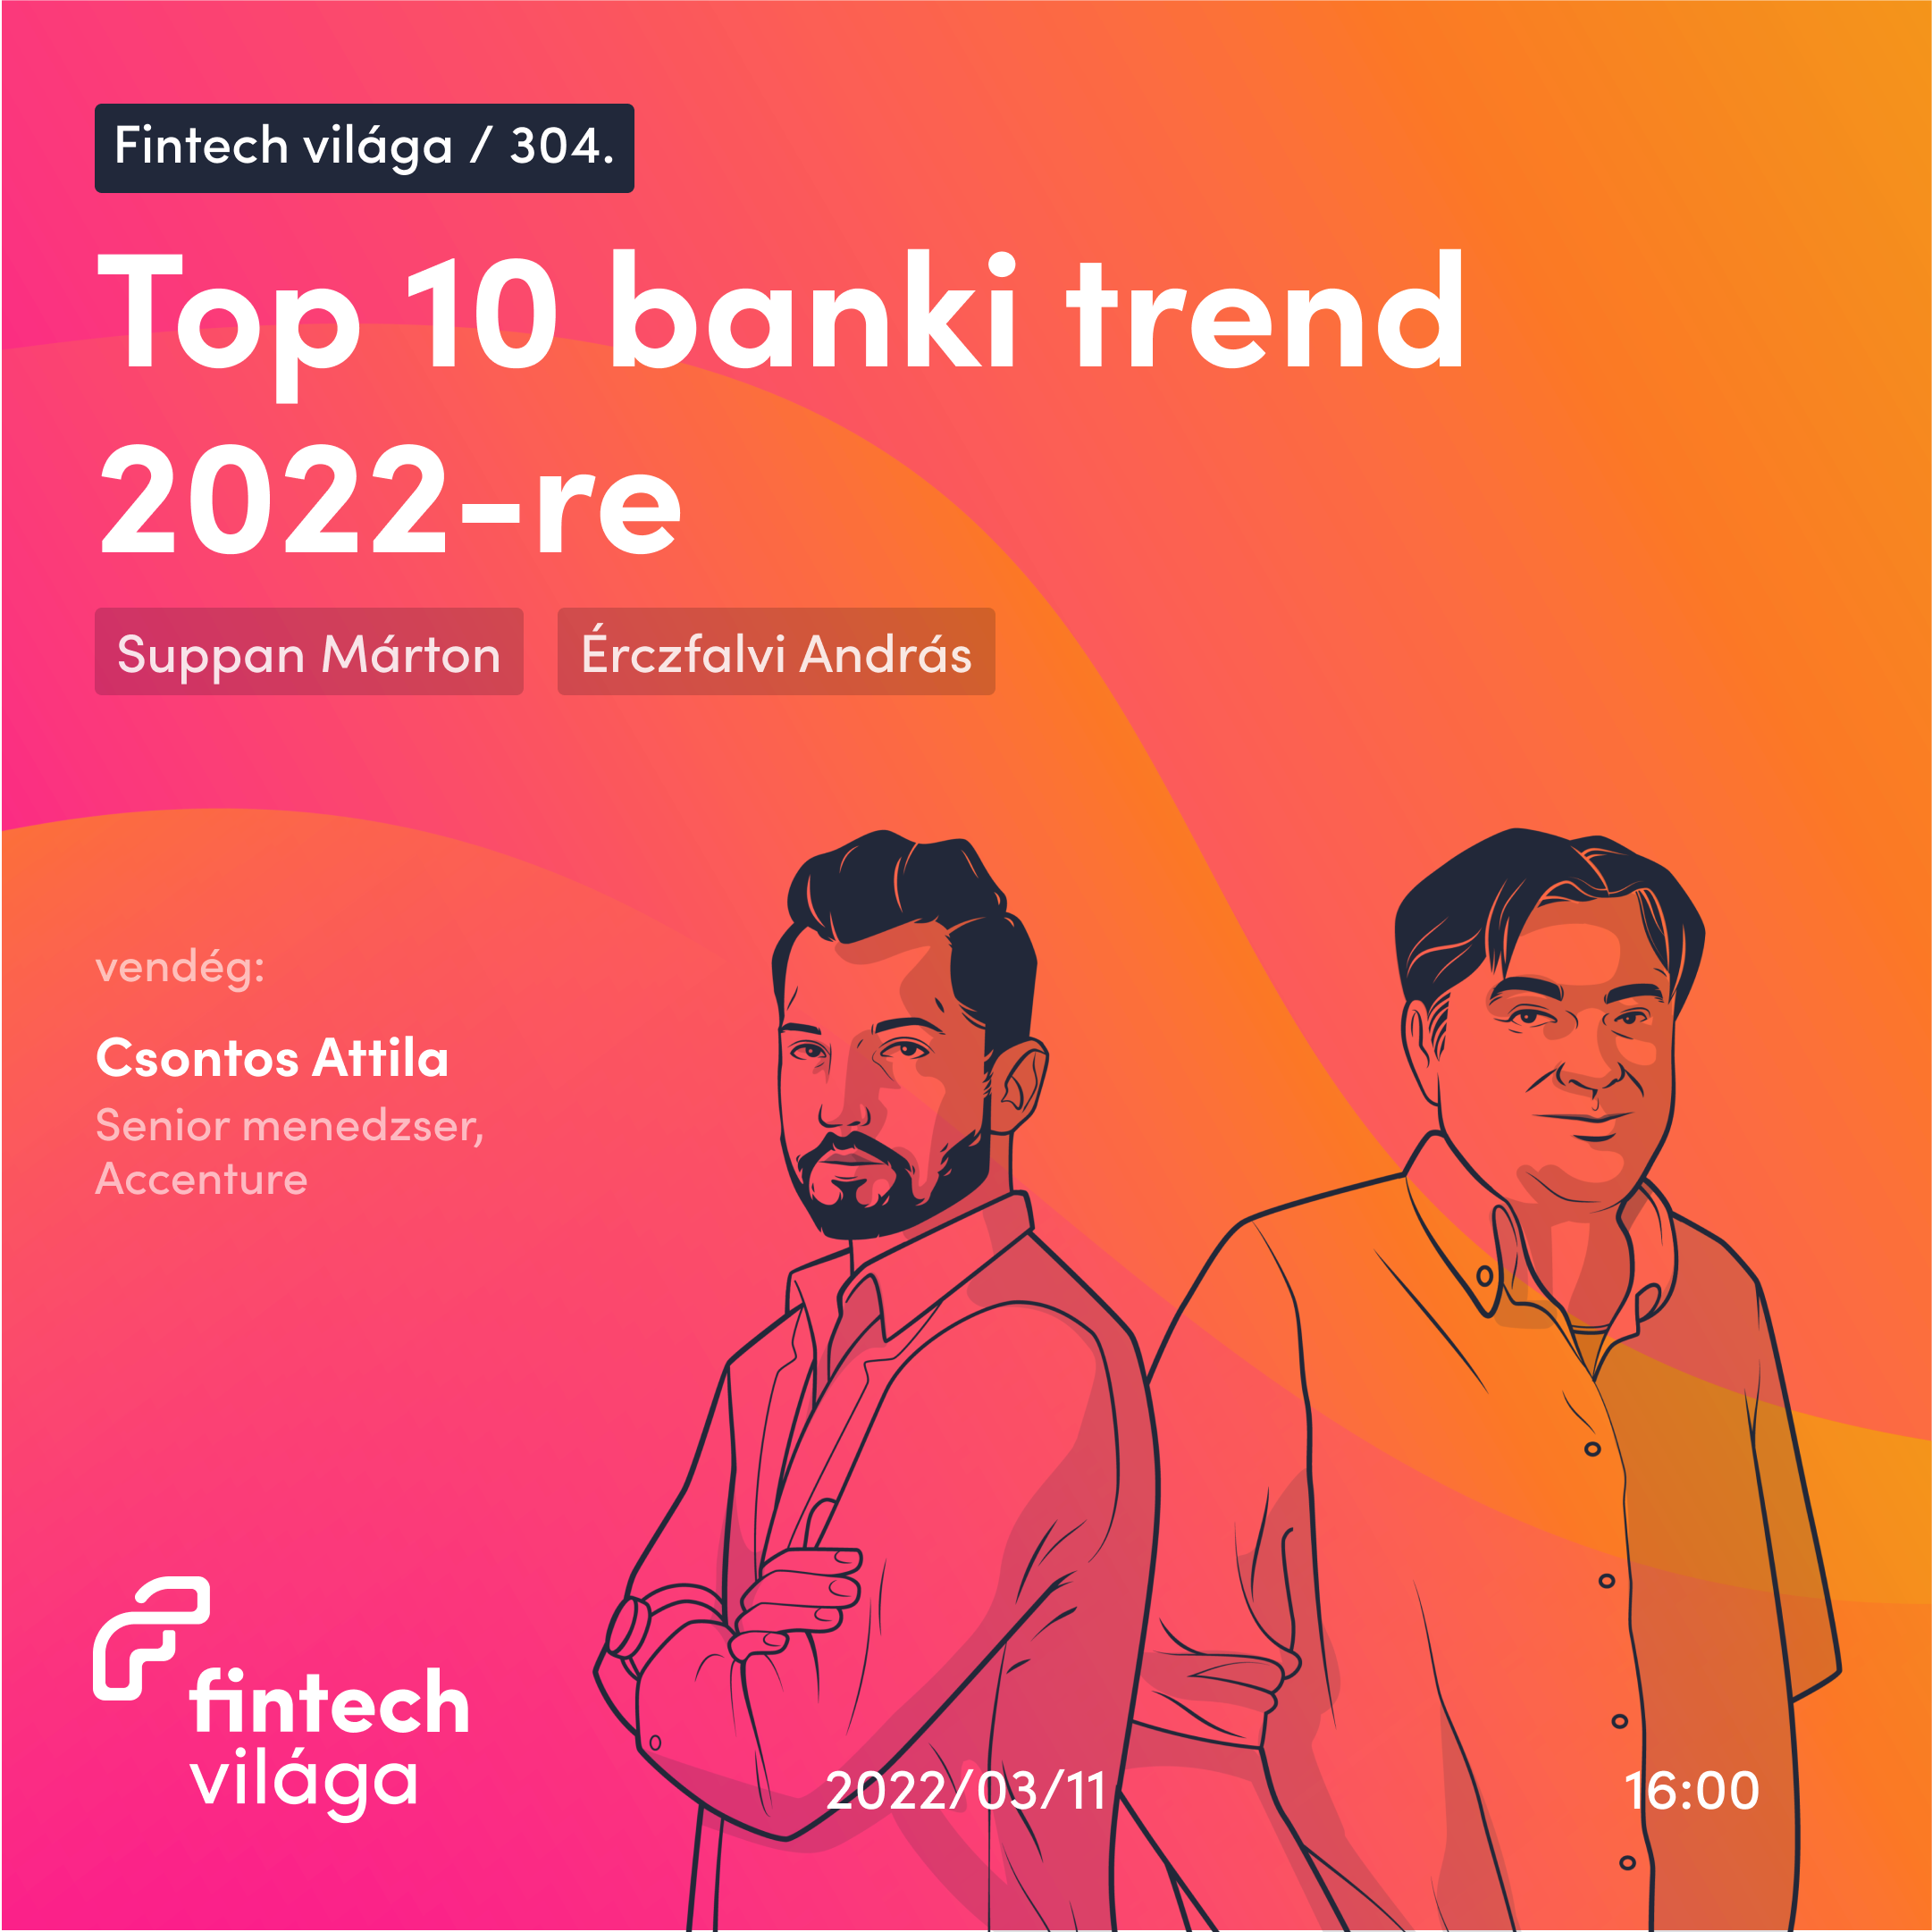 Top 10 banki trend 2022-re